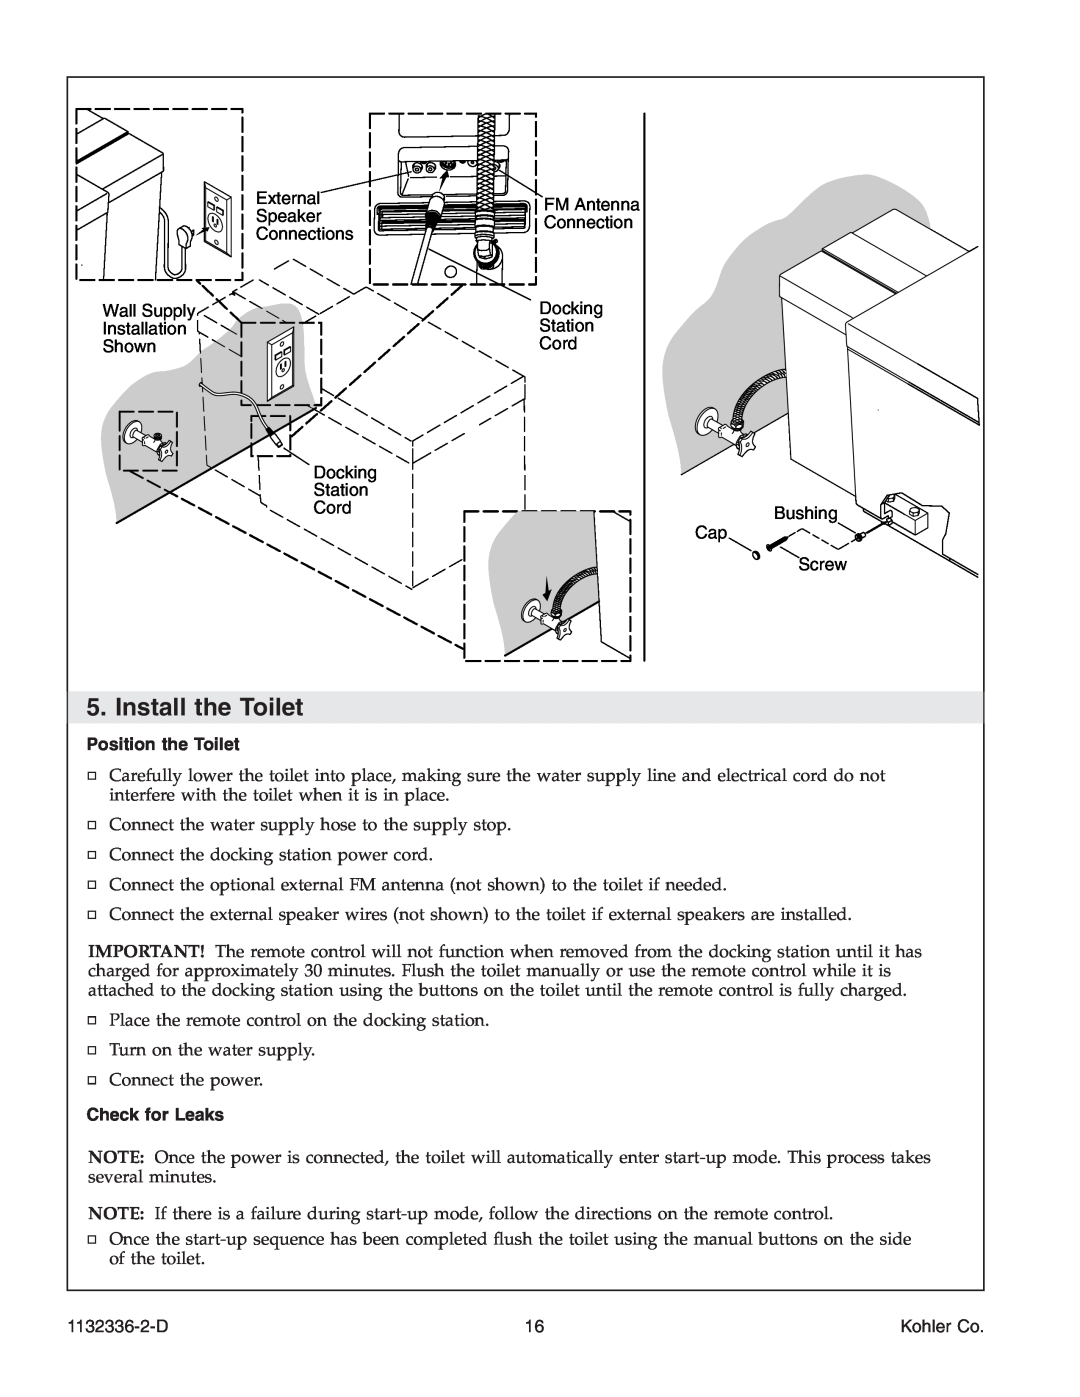 Kohler K-3900 manual Install the Toilet, Position the Toilet, Check for Leaks, 1132336-2-D, Kohler Co 